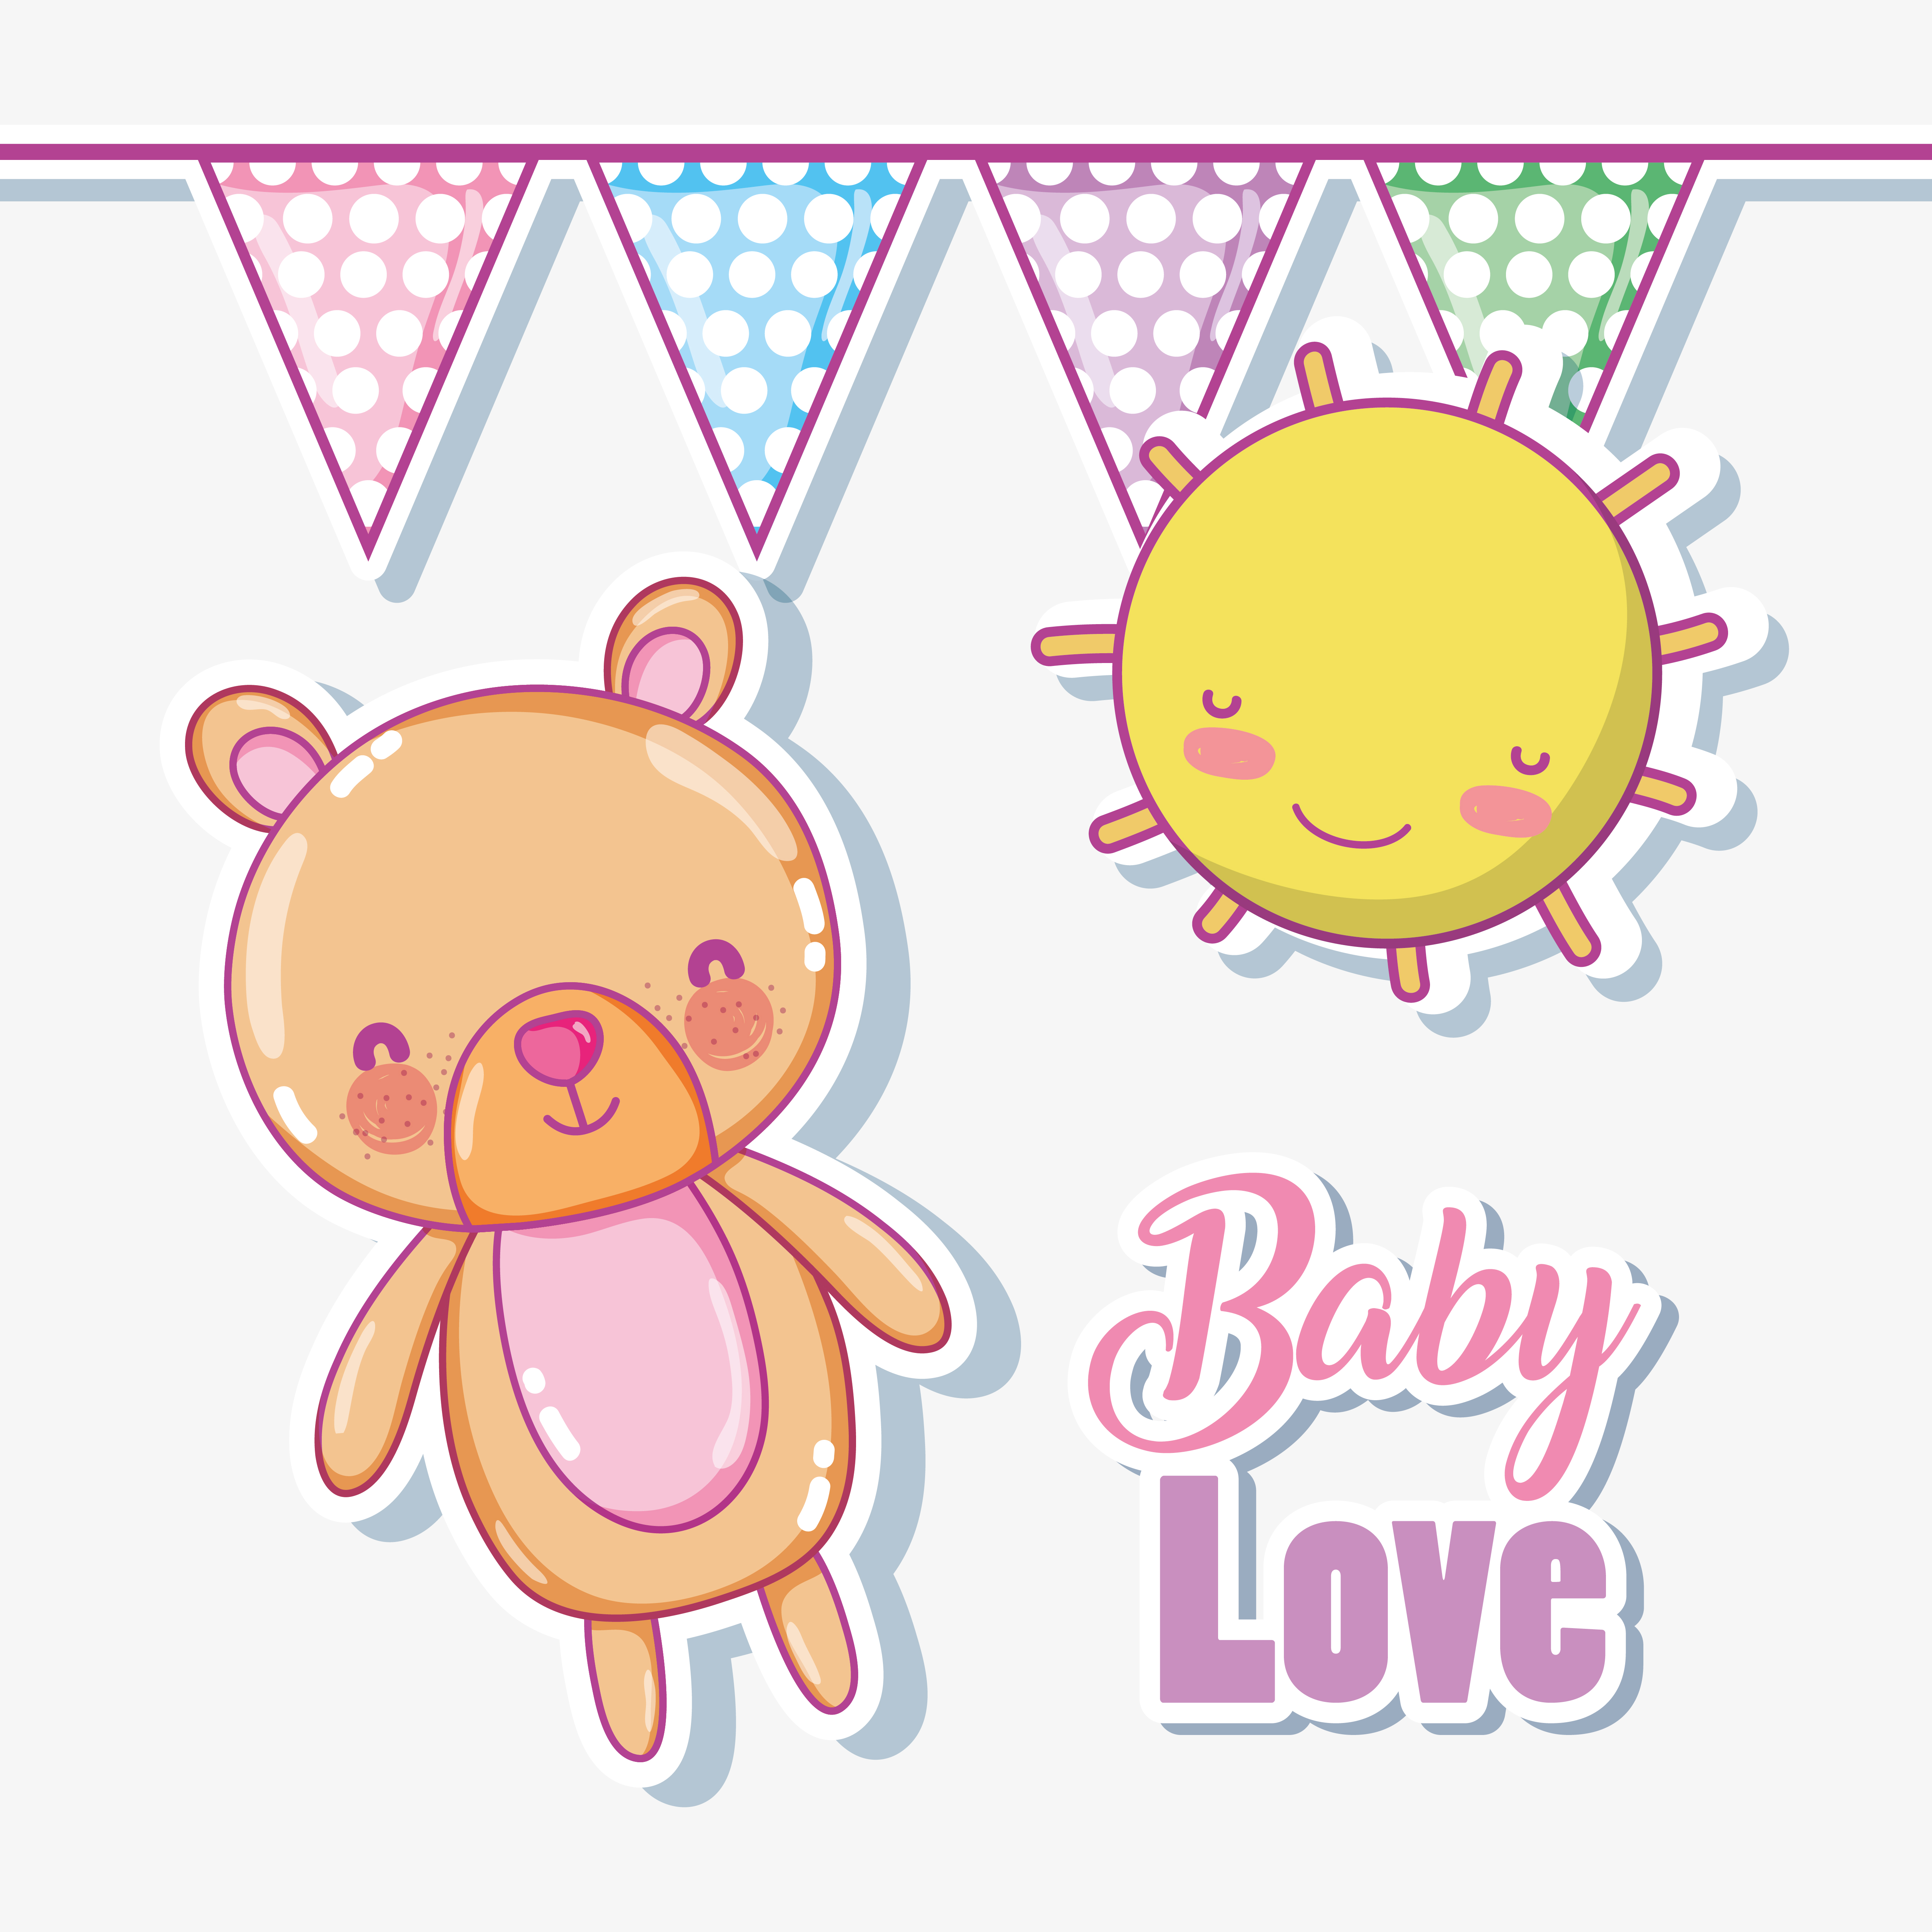 Baby love cartoons 624764 Vector Art at Vecteezy